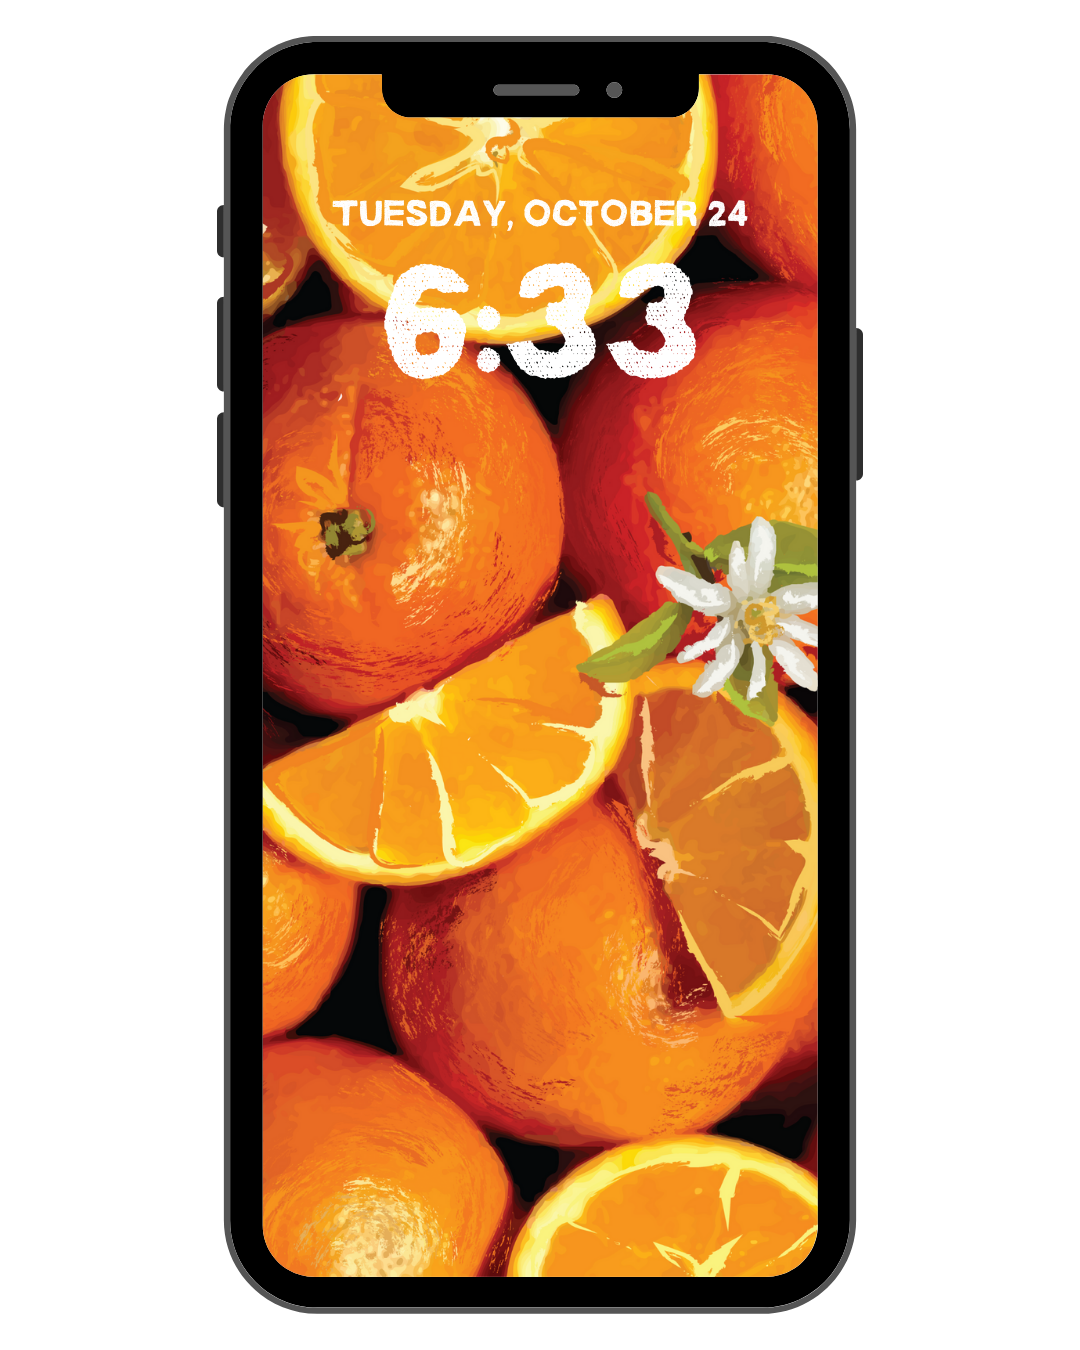 Oranges - Phone Screensaver